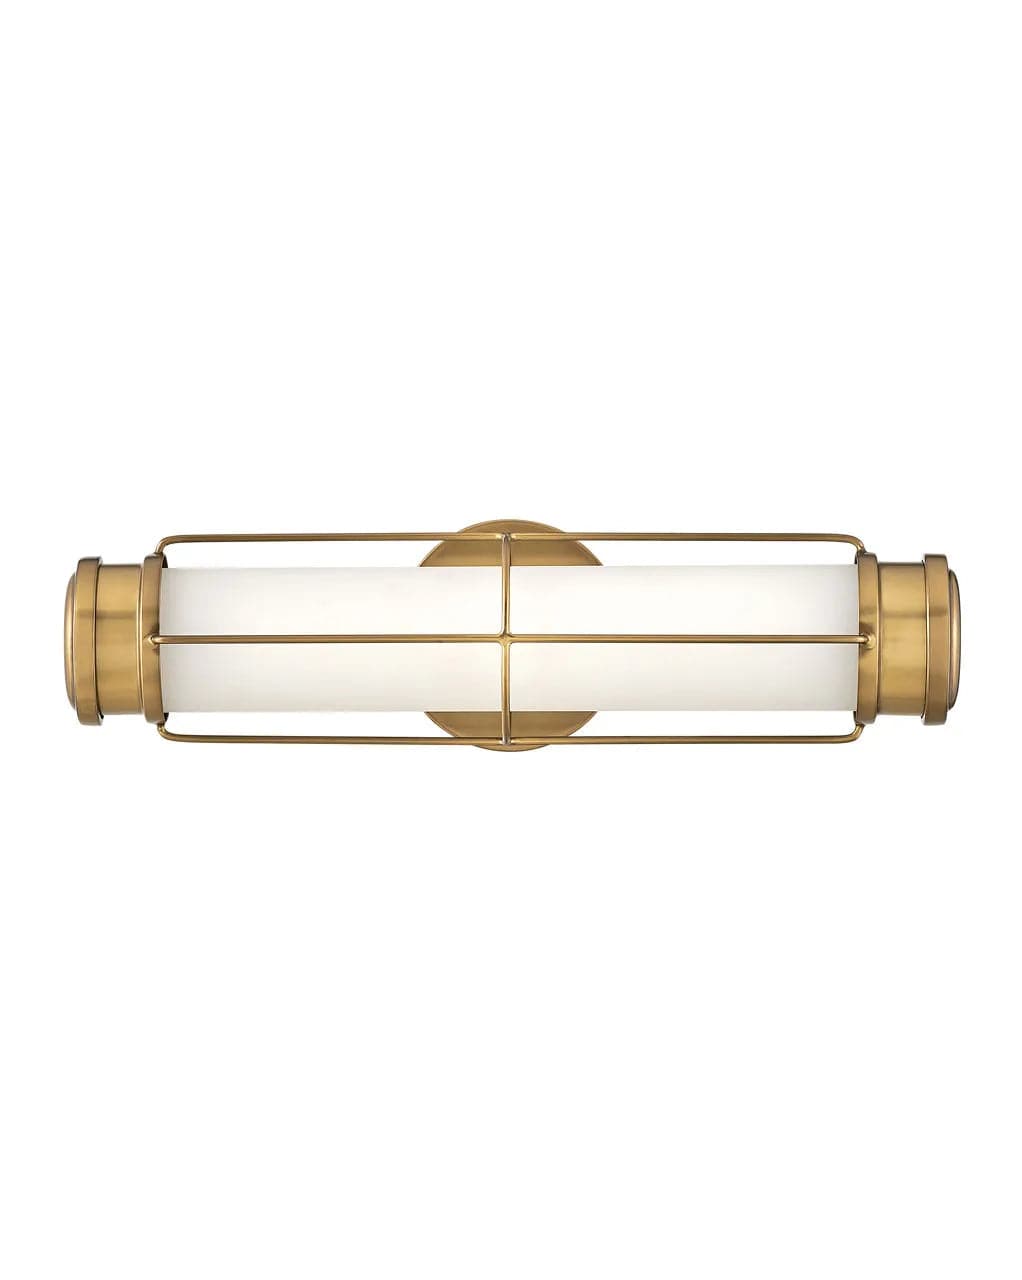 Bath Saylor - Small LED-Hinkley Lighting-HINKLEY-54300PN-Wall LightingPolished Nickel-3-France and Son